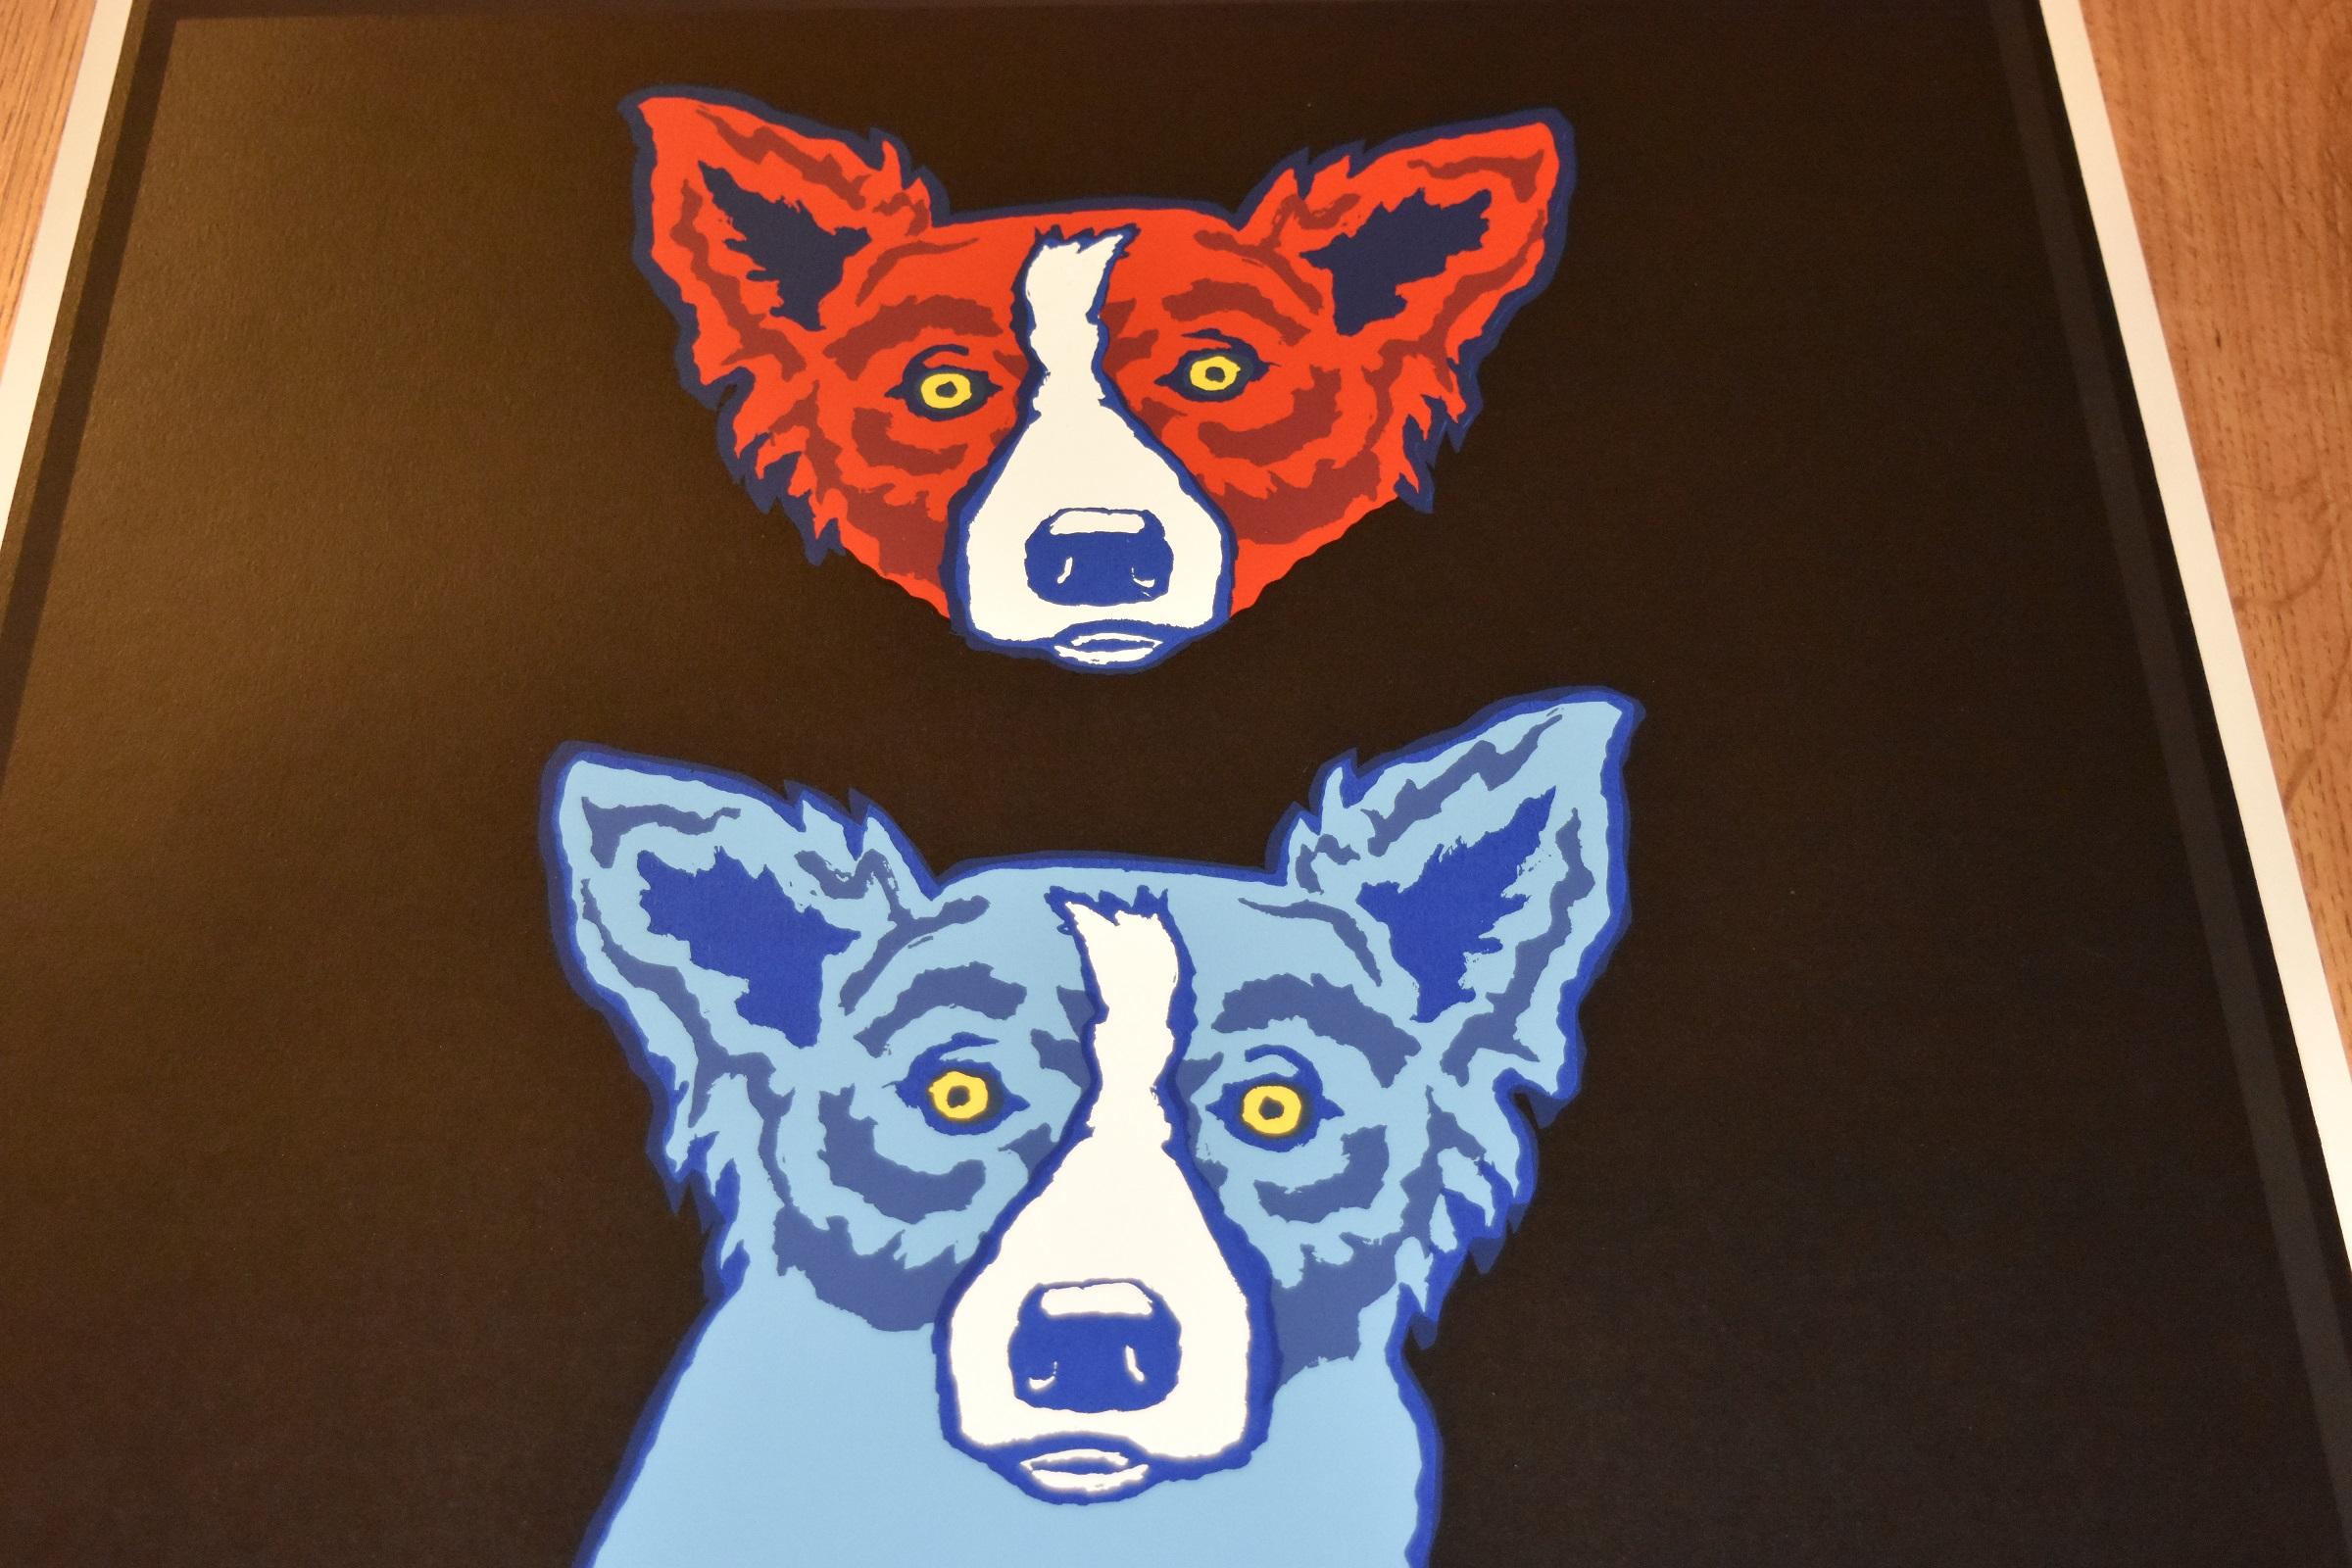 Mischief On My Mind - Siebdruck mit blauem Hund mit signiertem Druck (Pop-Art), Print, von George Rodrigue